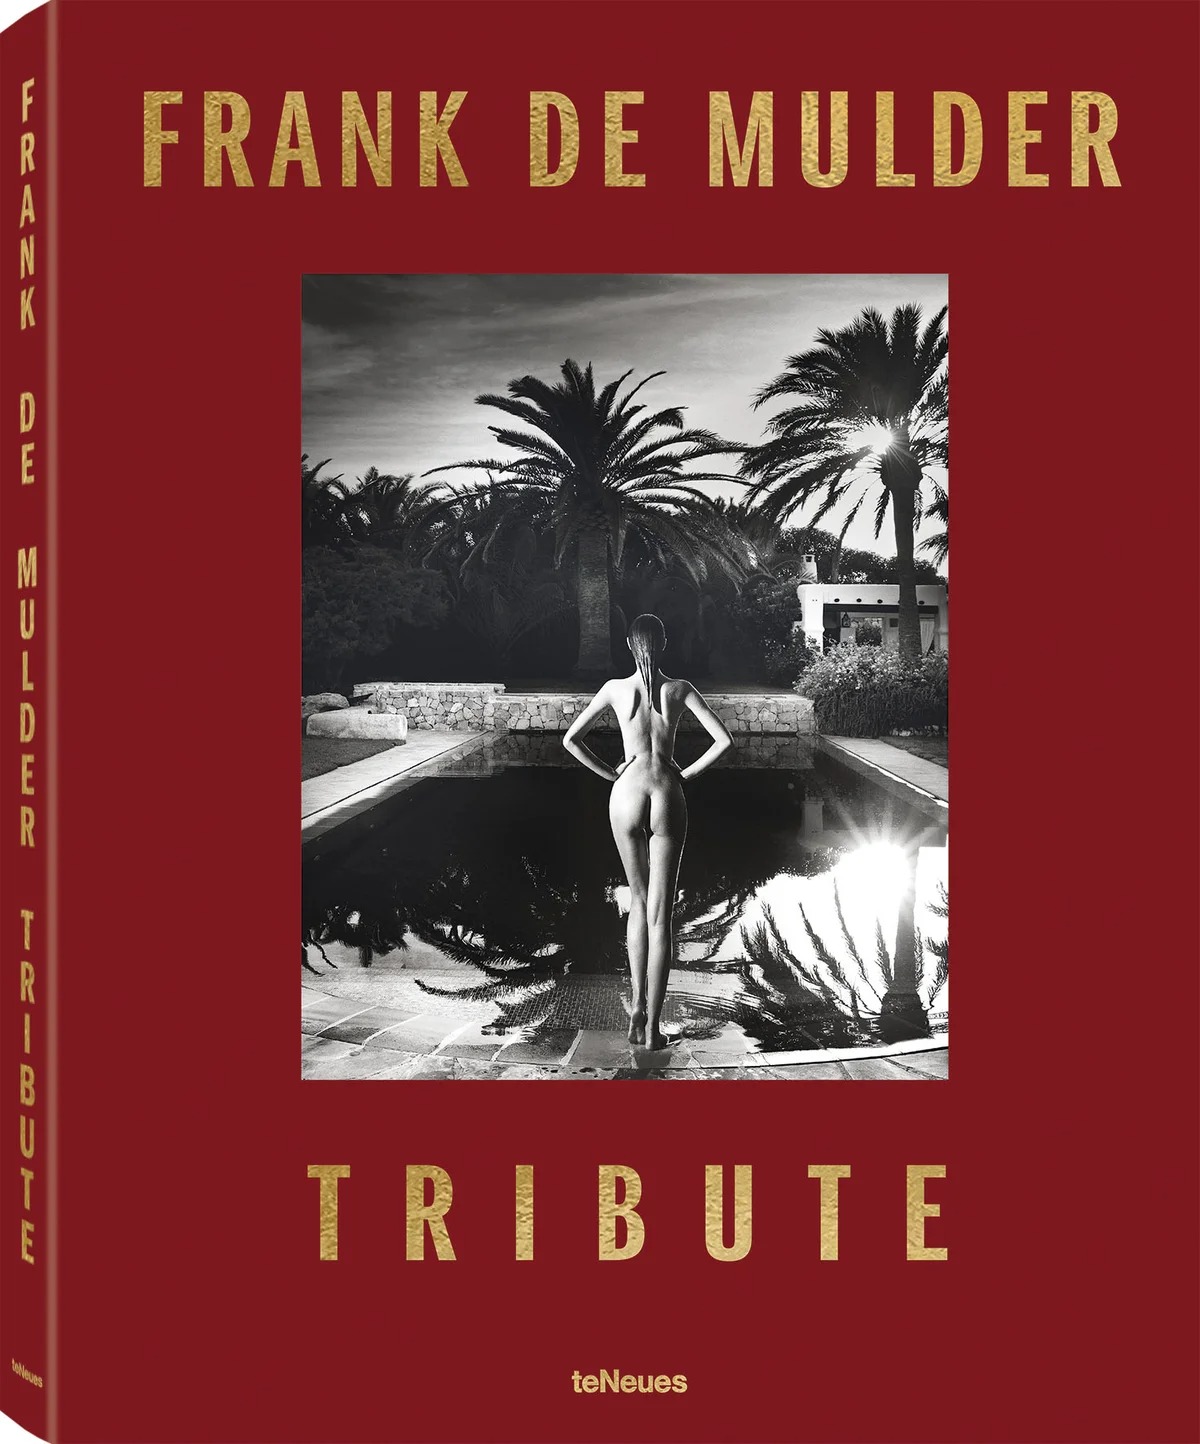 Frank de Mulder Tribute (signed)